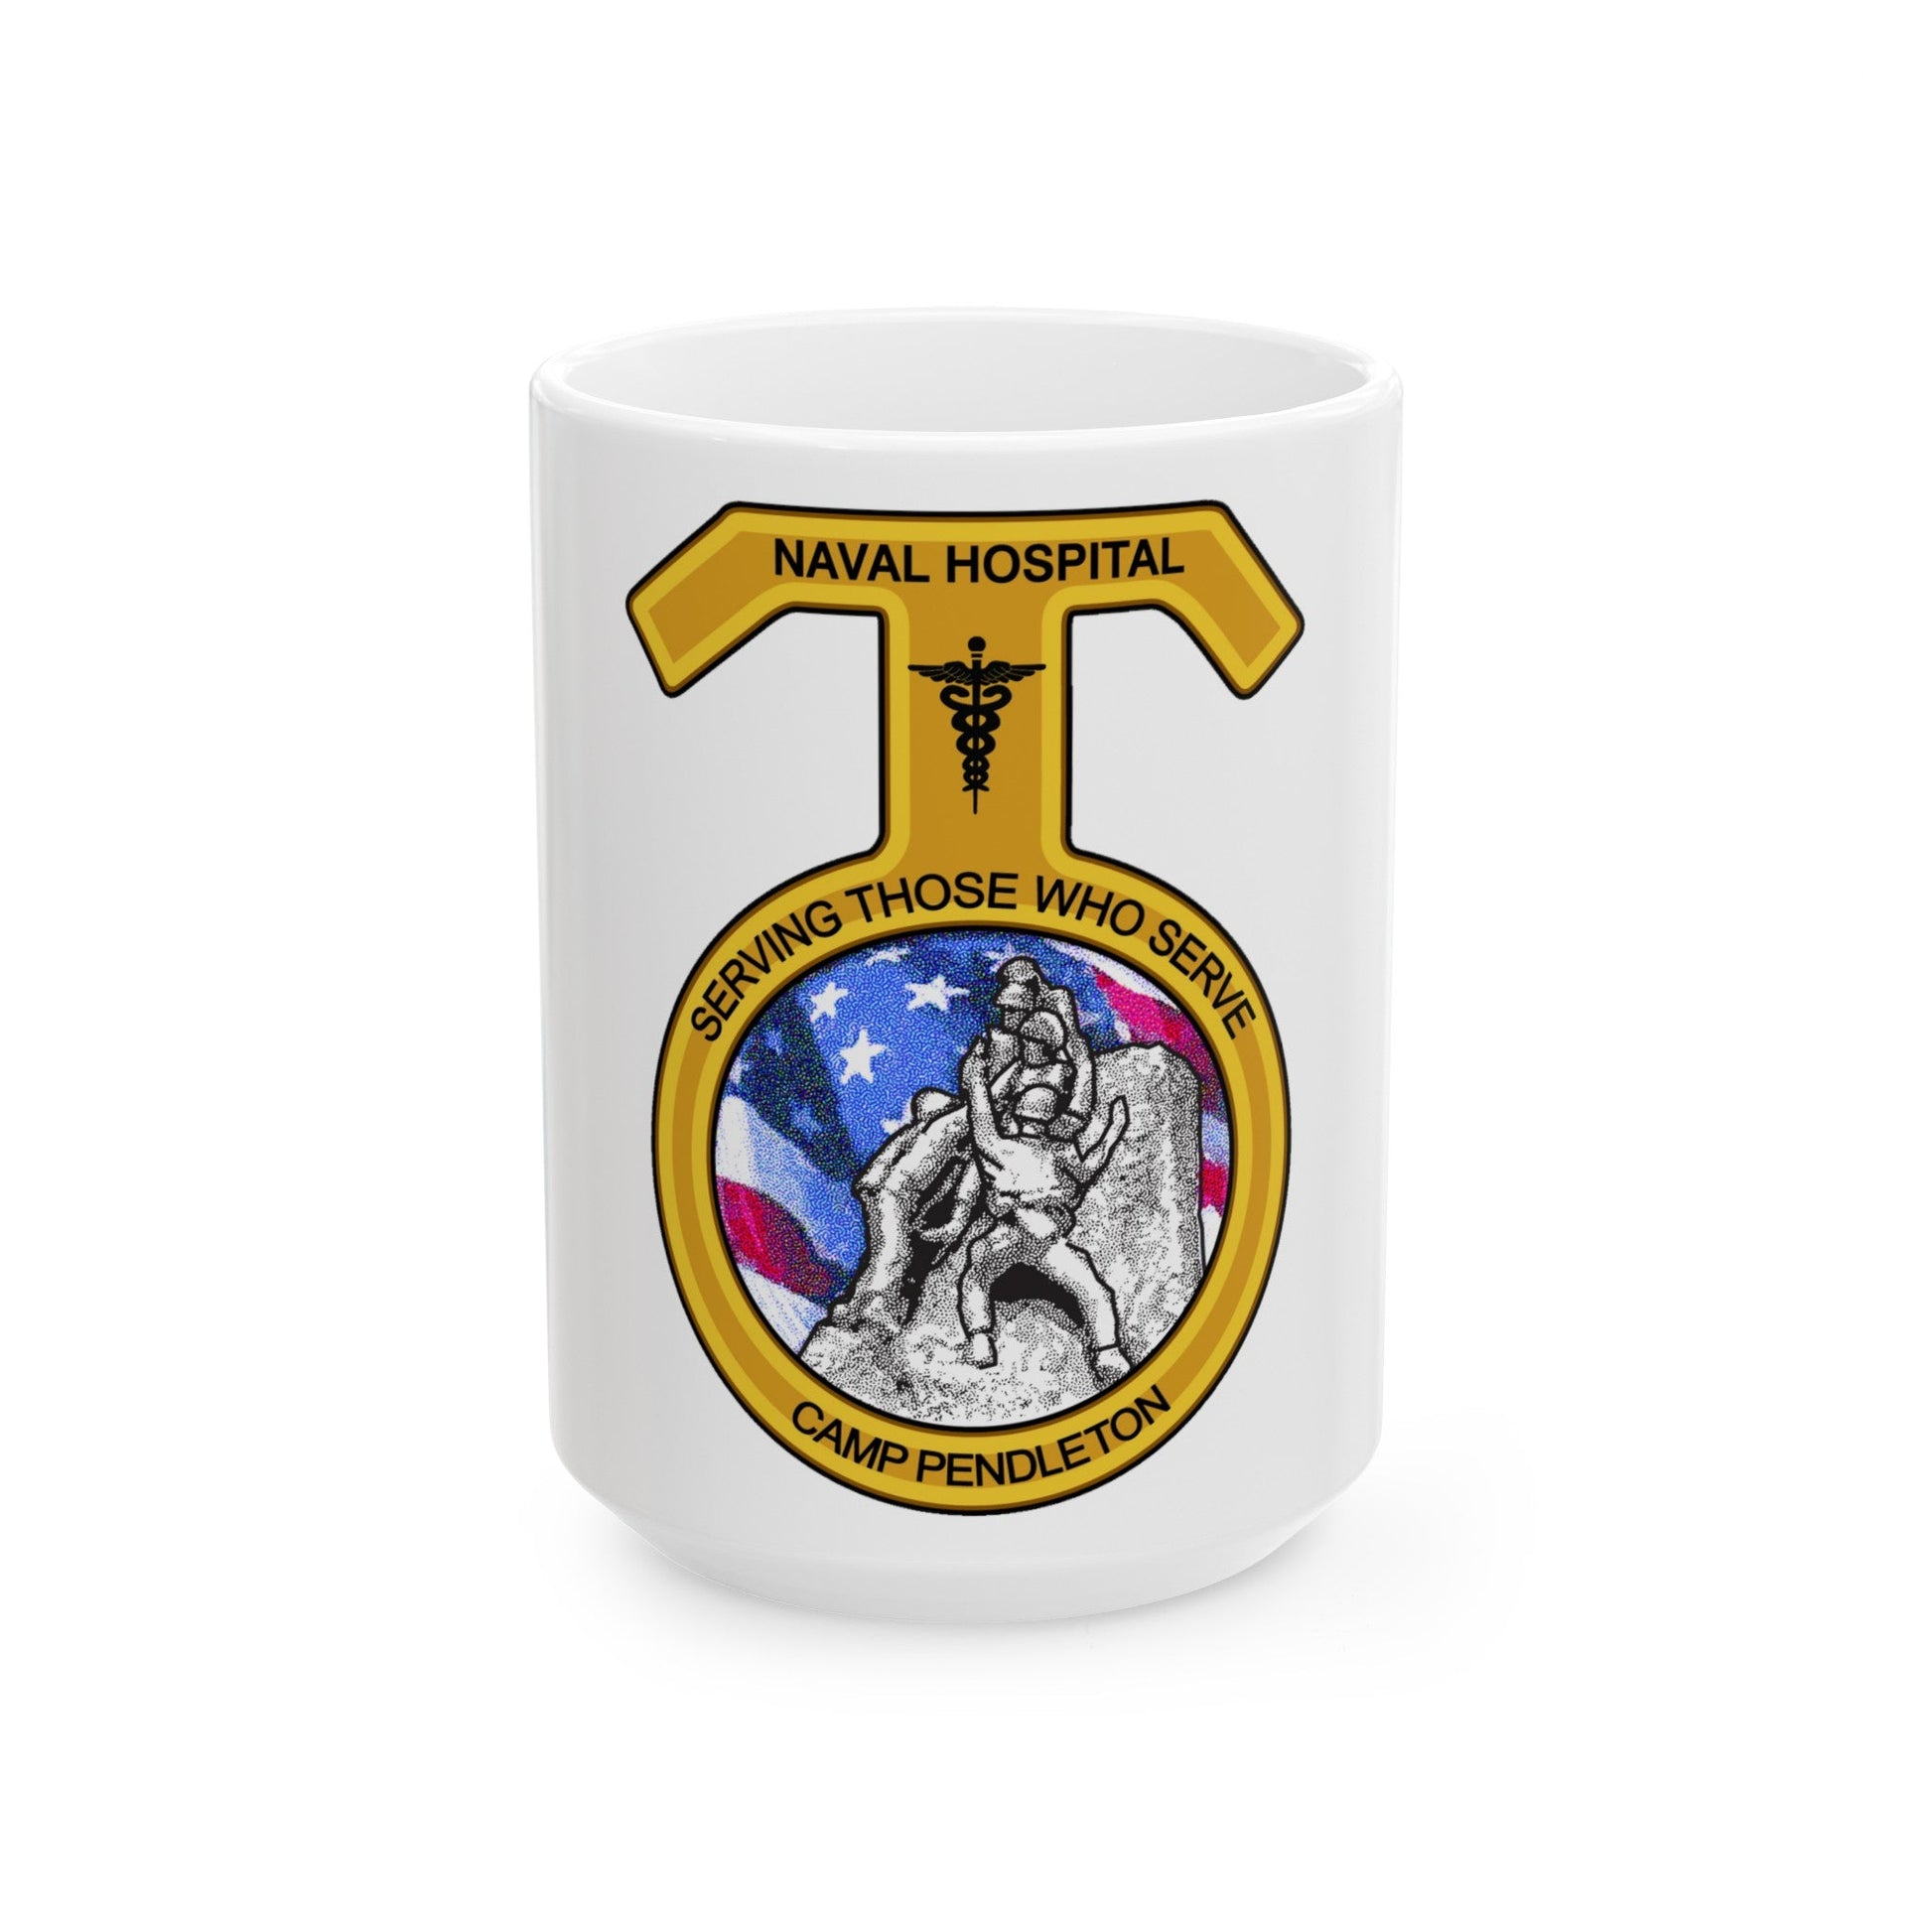 Naval Hospital Camp Pendleton (U.S. Navy) White Coffee Mug-15oz-The Sticker Space